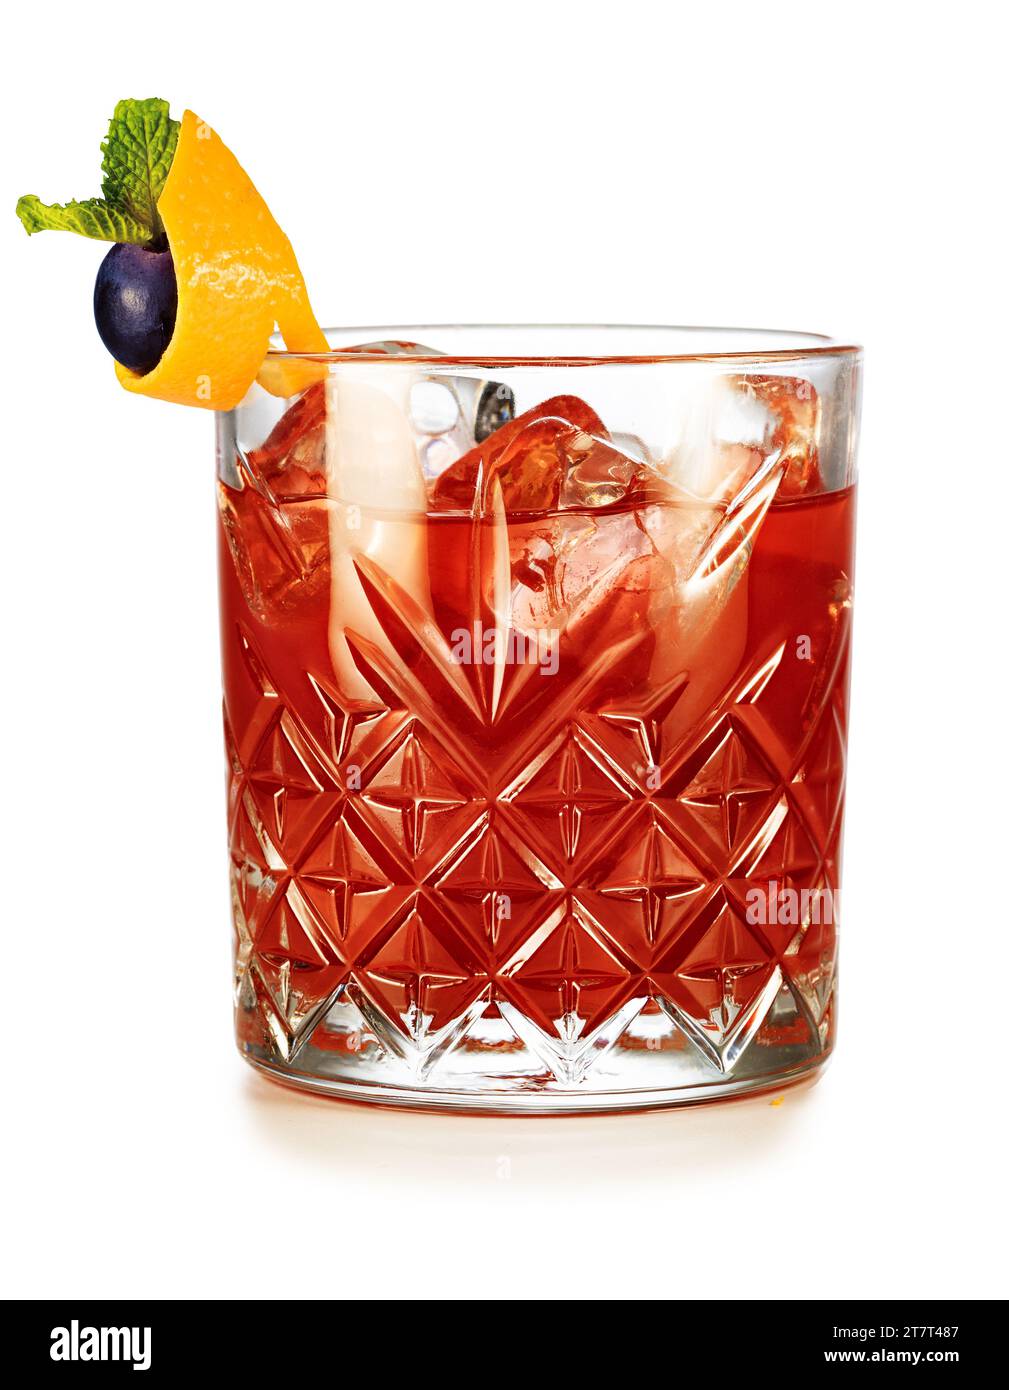 Klassischer negroni-Cocktail auf den Felsen garniert mit Trauben- und Minzblatt in Orangenschale isoliert auf weißem Hintergrund. Echte Studio-Aufnahme. Stockfoto